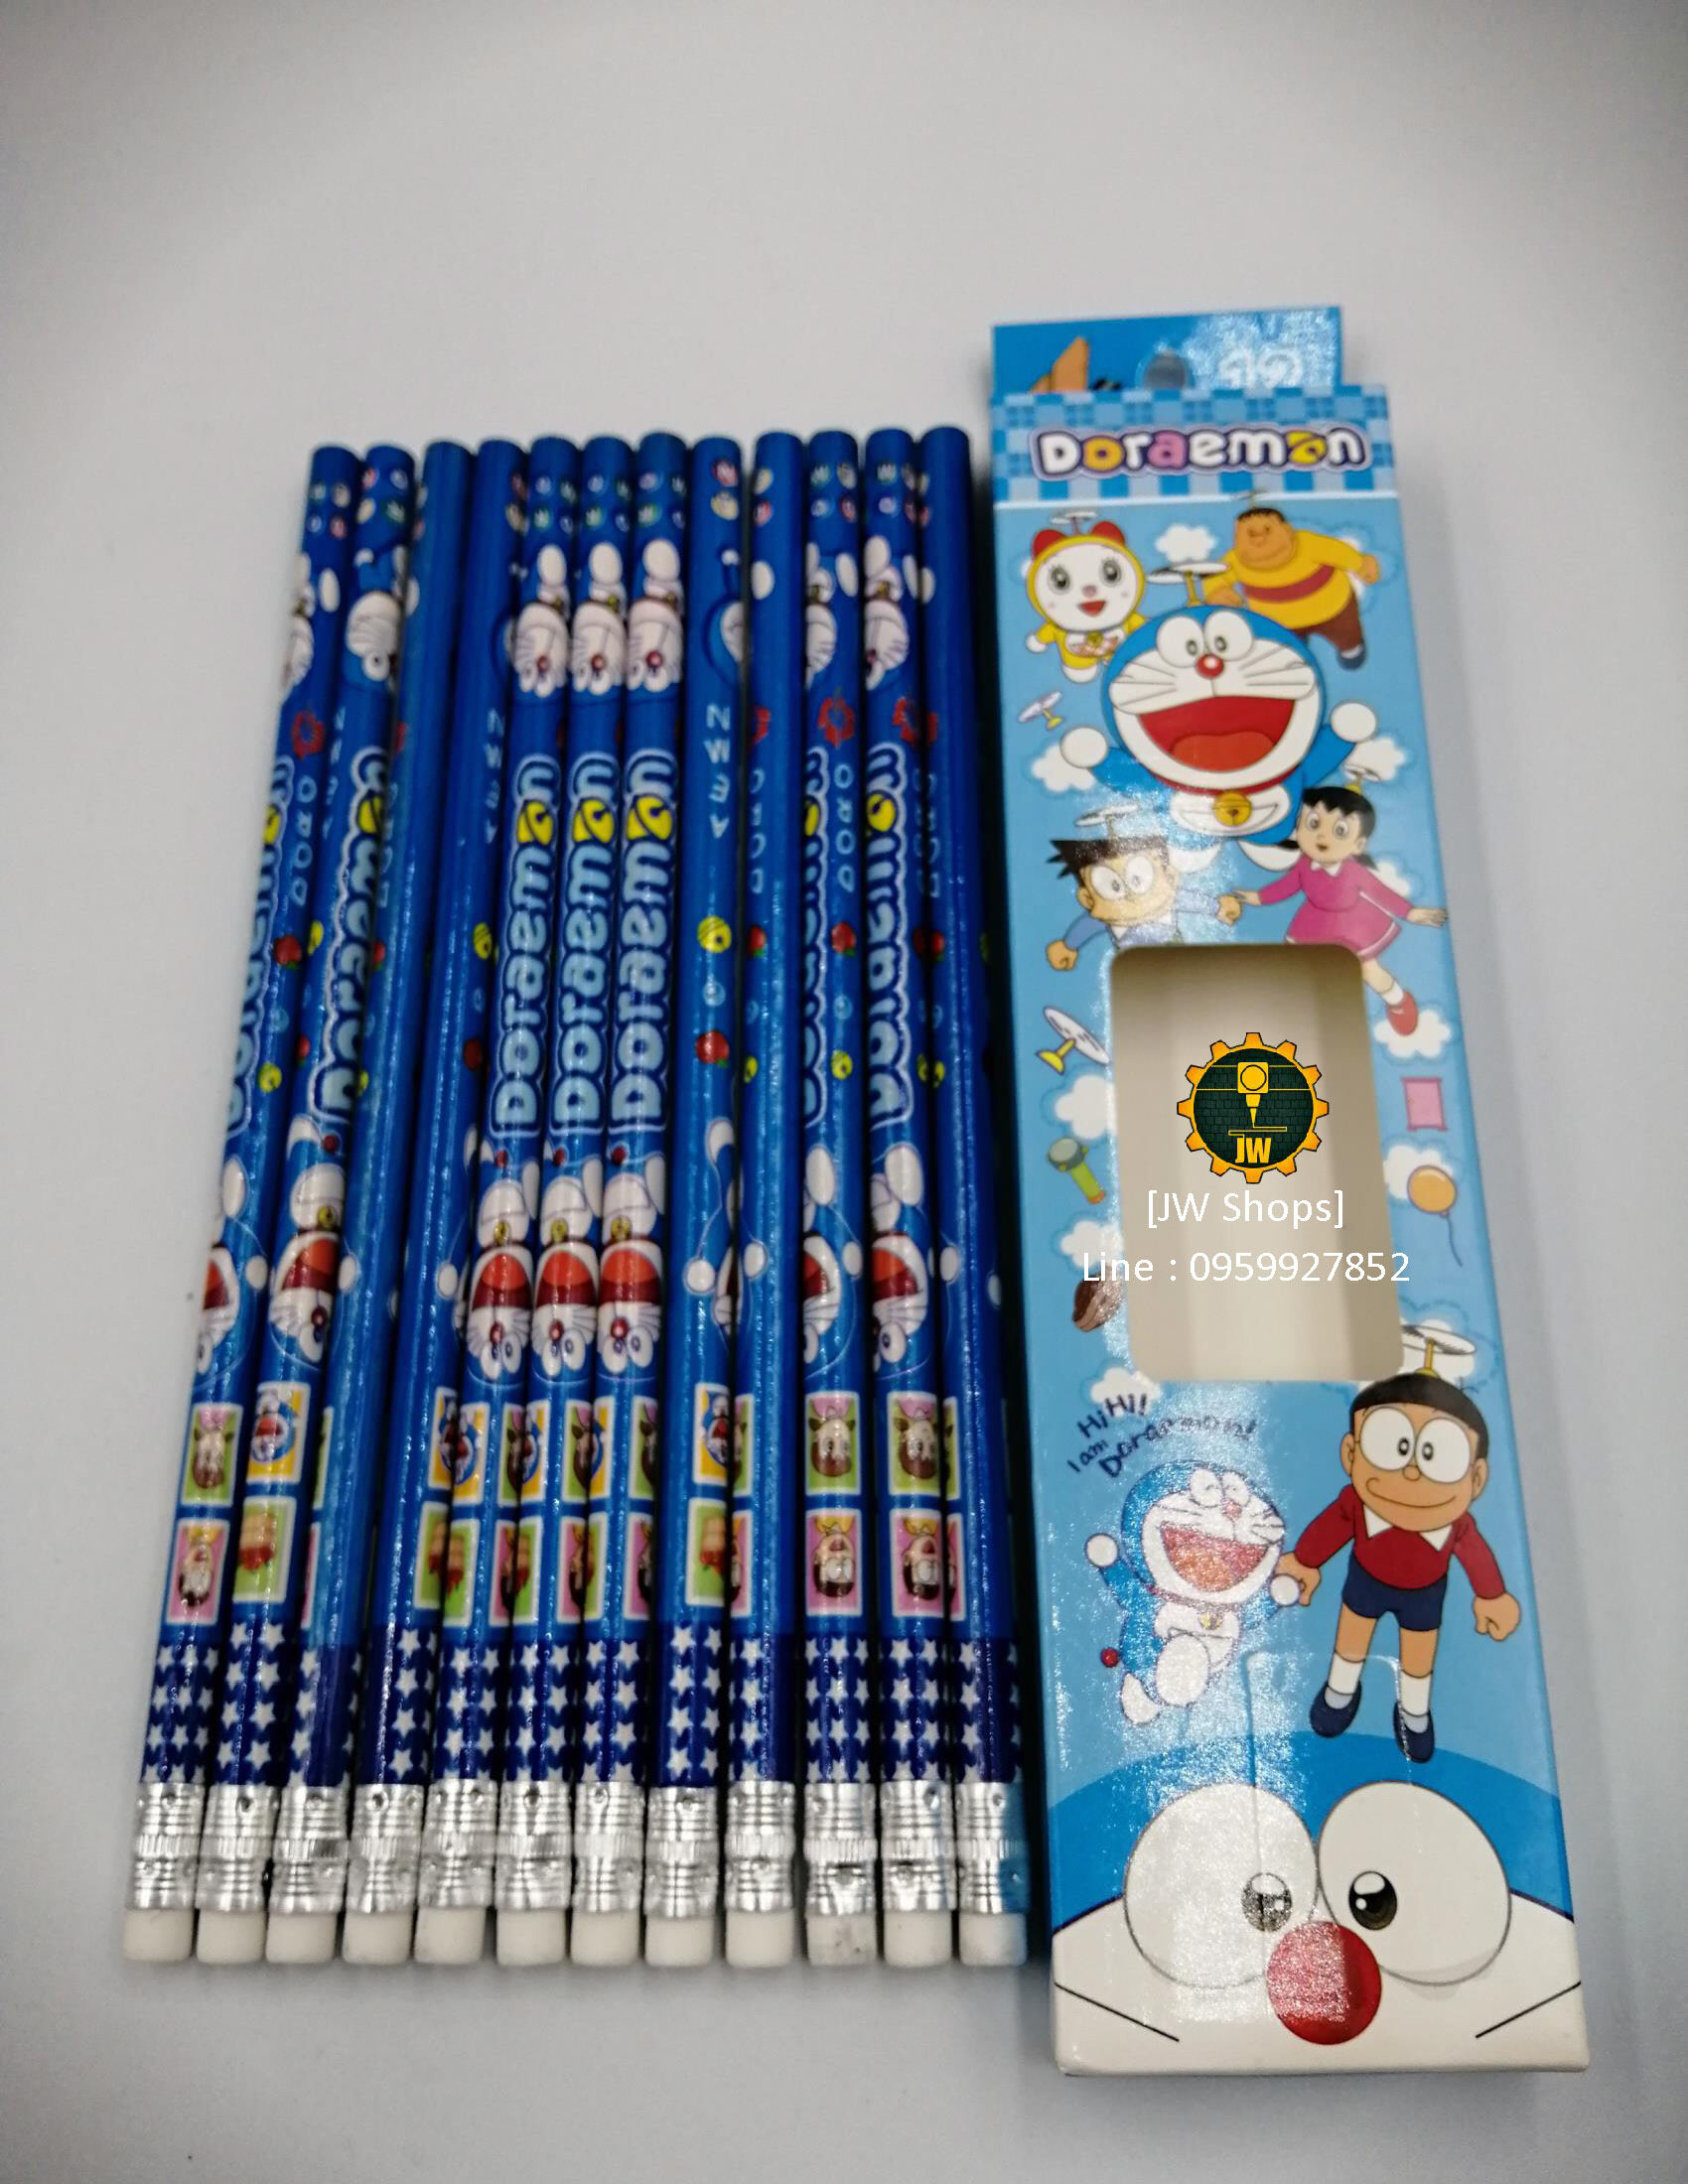 ชุดดินสอ 12 แท่ง ดินสอมียางลบ ดินสอลายการ์ตูน Doraemon